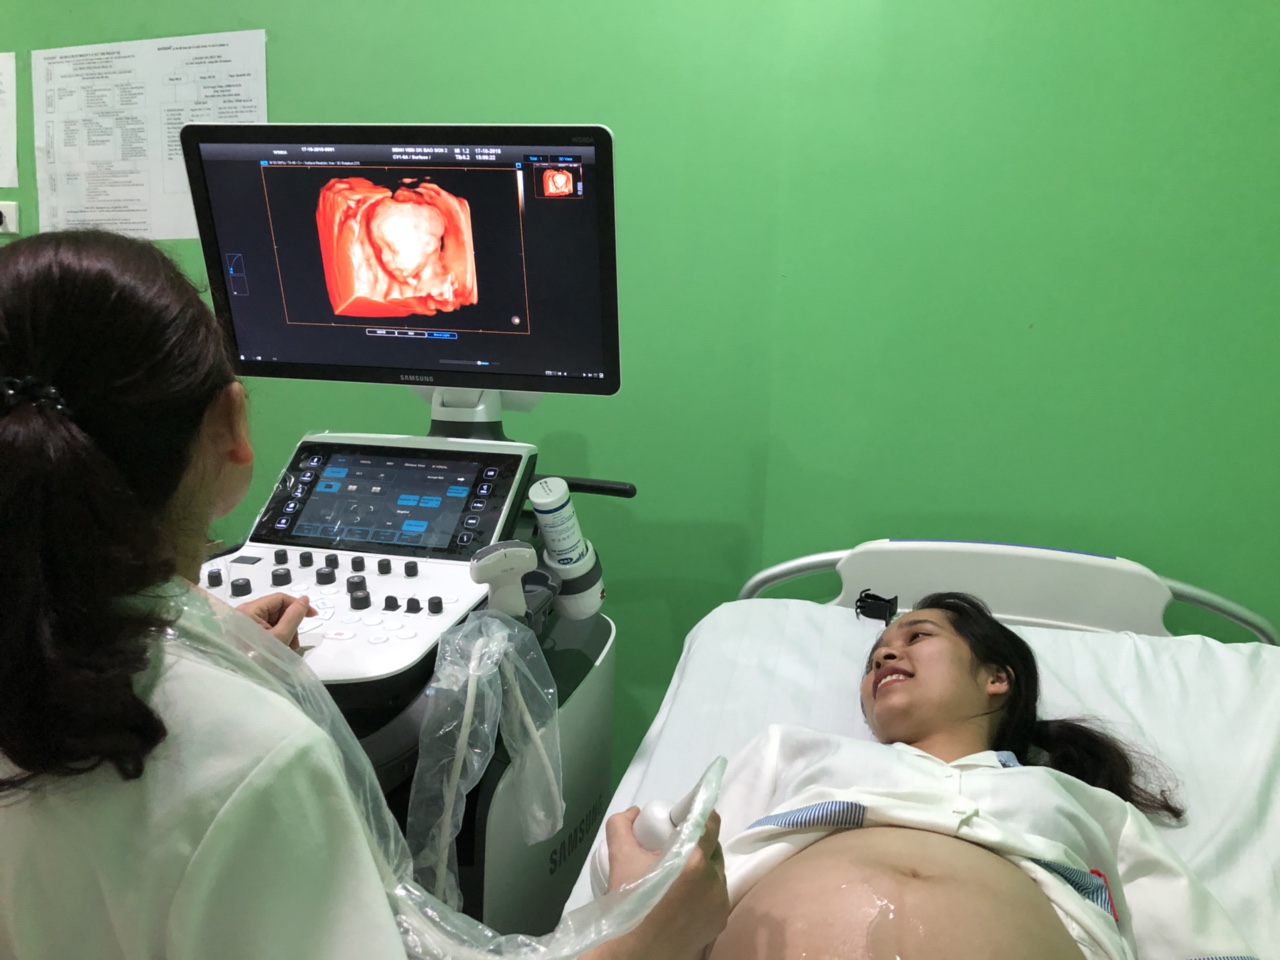 Siêu âm thai 4D cho ra những hình ảnh và chẩn đoán chính xác nhất về tình trạng thai nhi